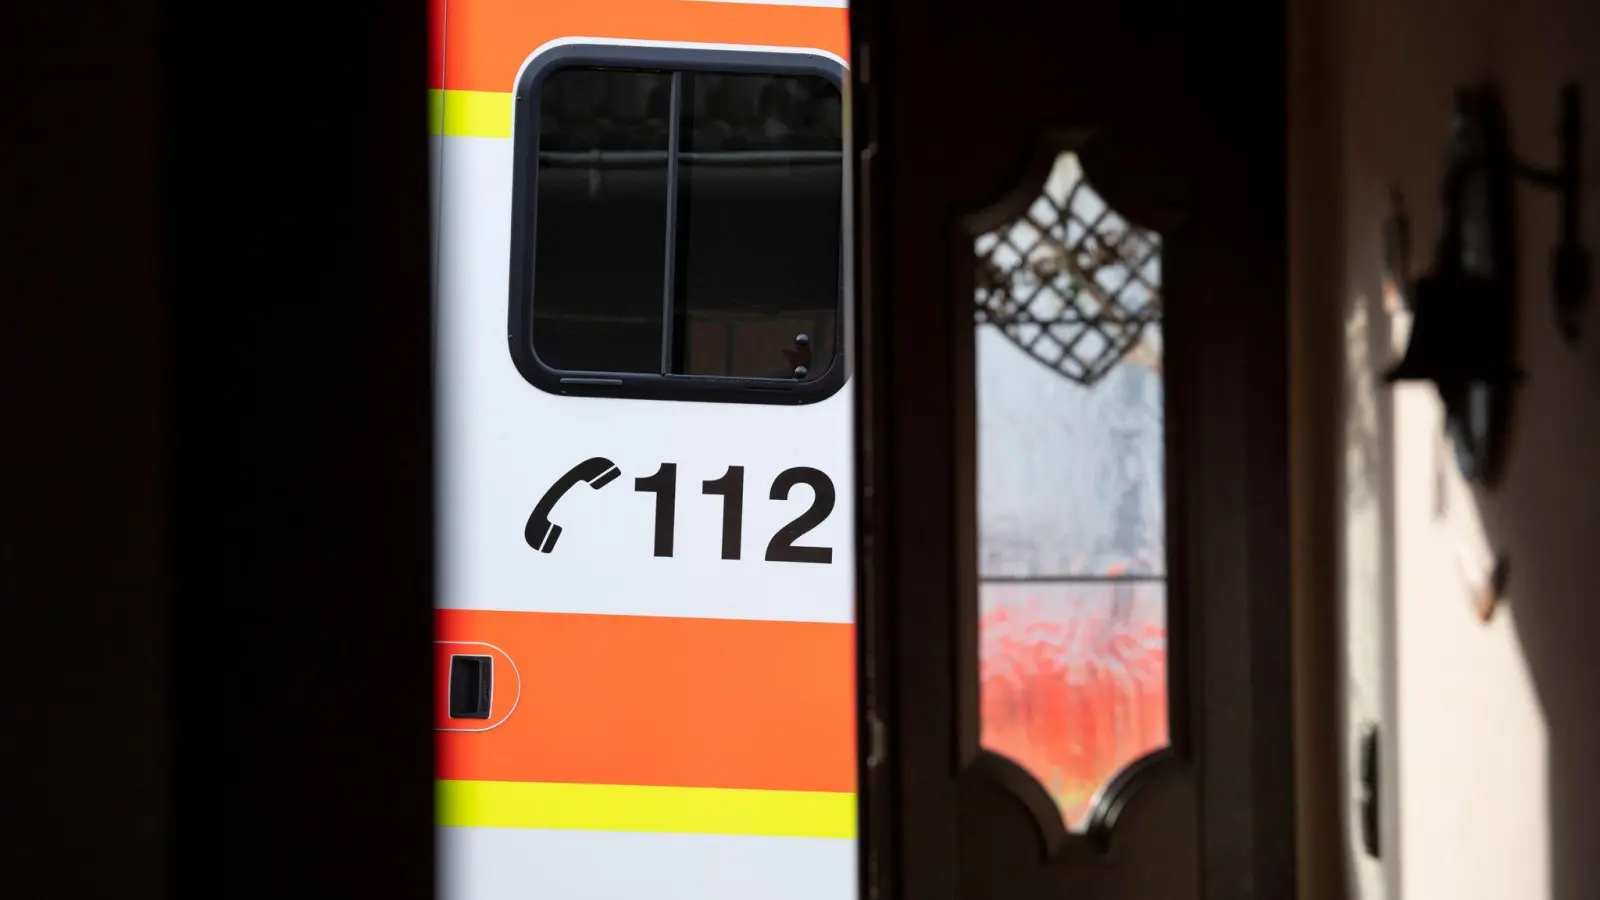 Ein Rettungswagen parkt vor der geöffneten Tür eines Wohnhauses: Ein Klingelstreich in Herrieden hatte ernste Konsequenzen für einen Bewohner. (Symbolbild: Boris Roessler/dpa)